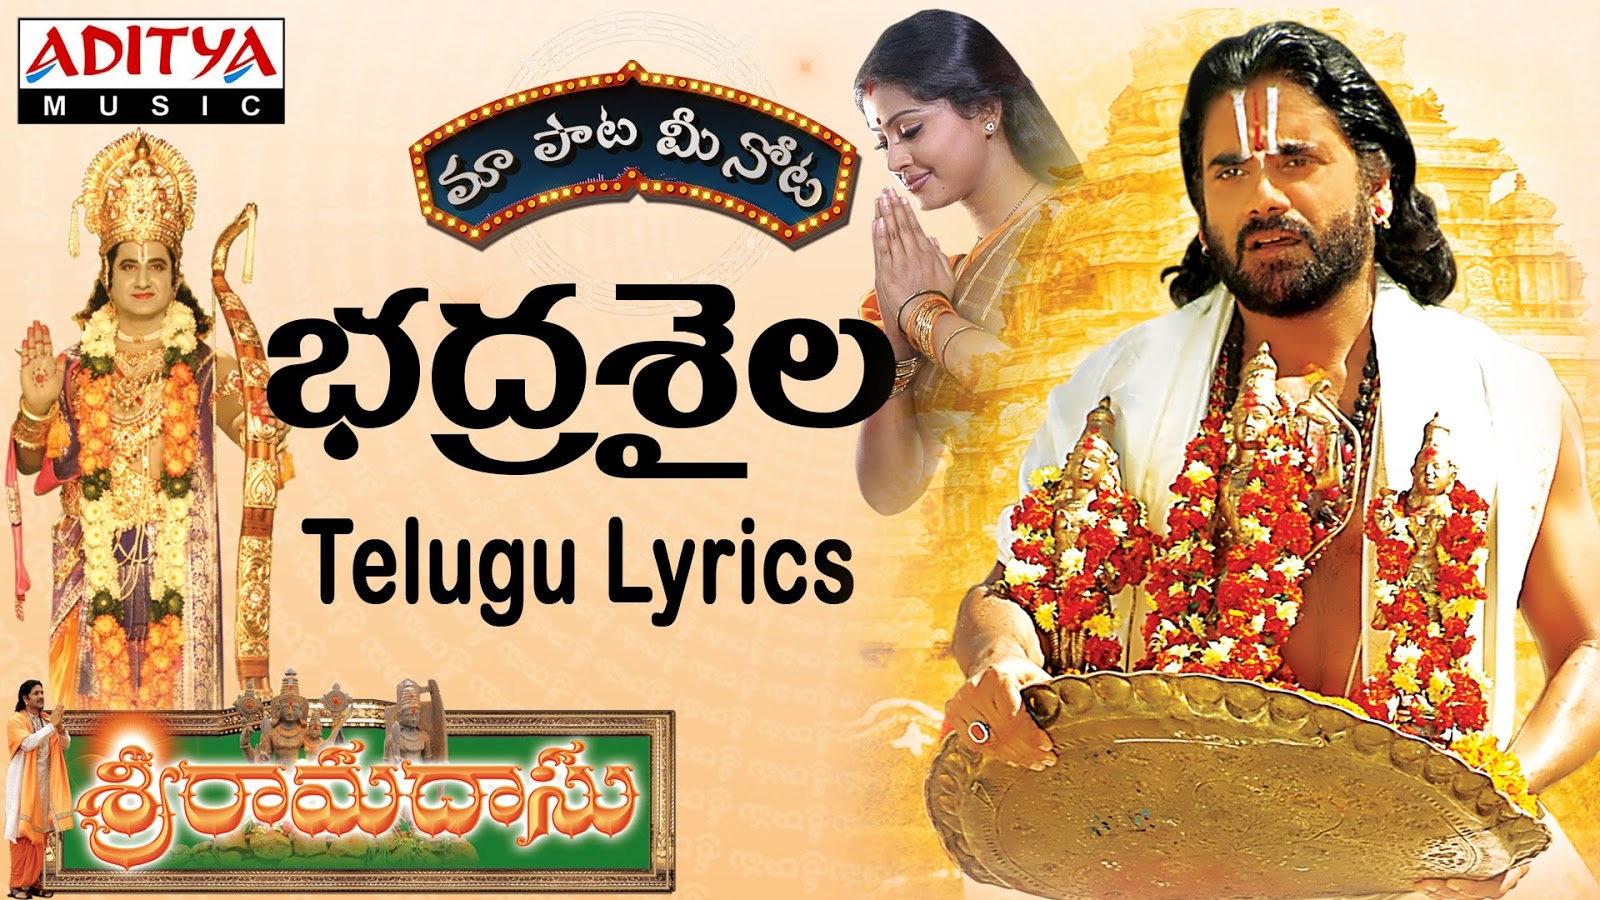 Sri ramadasu songs mp3 free download